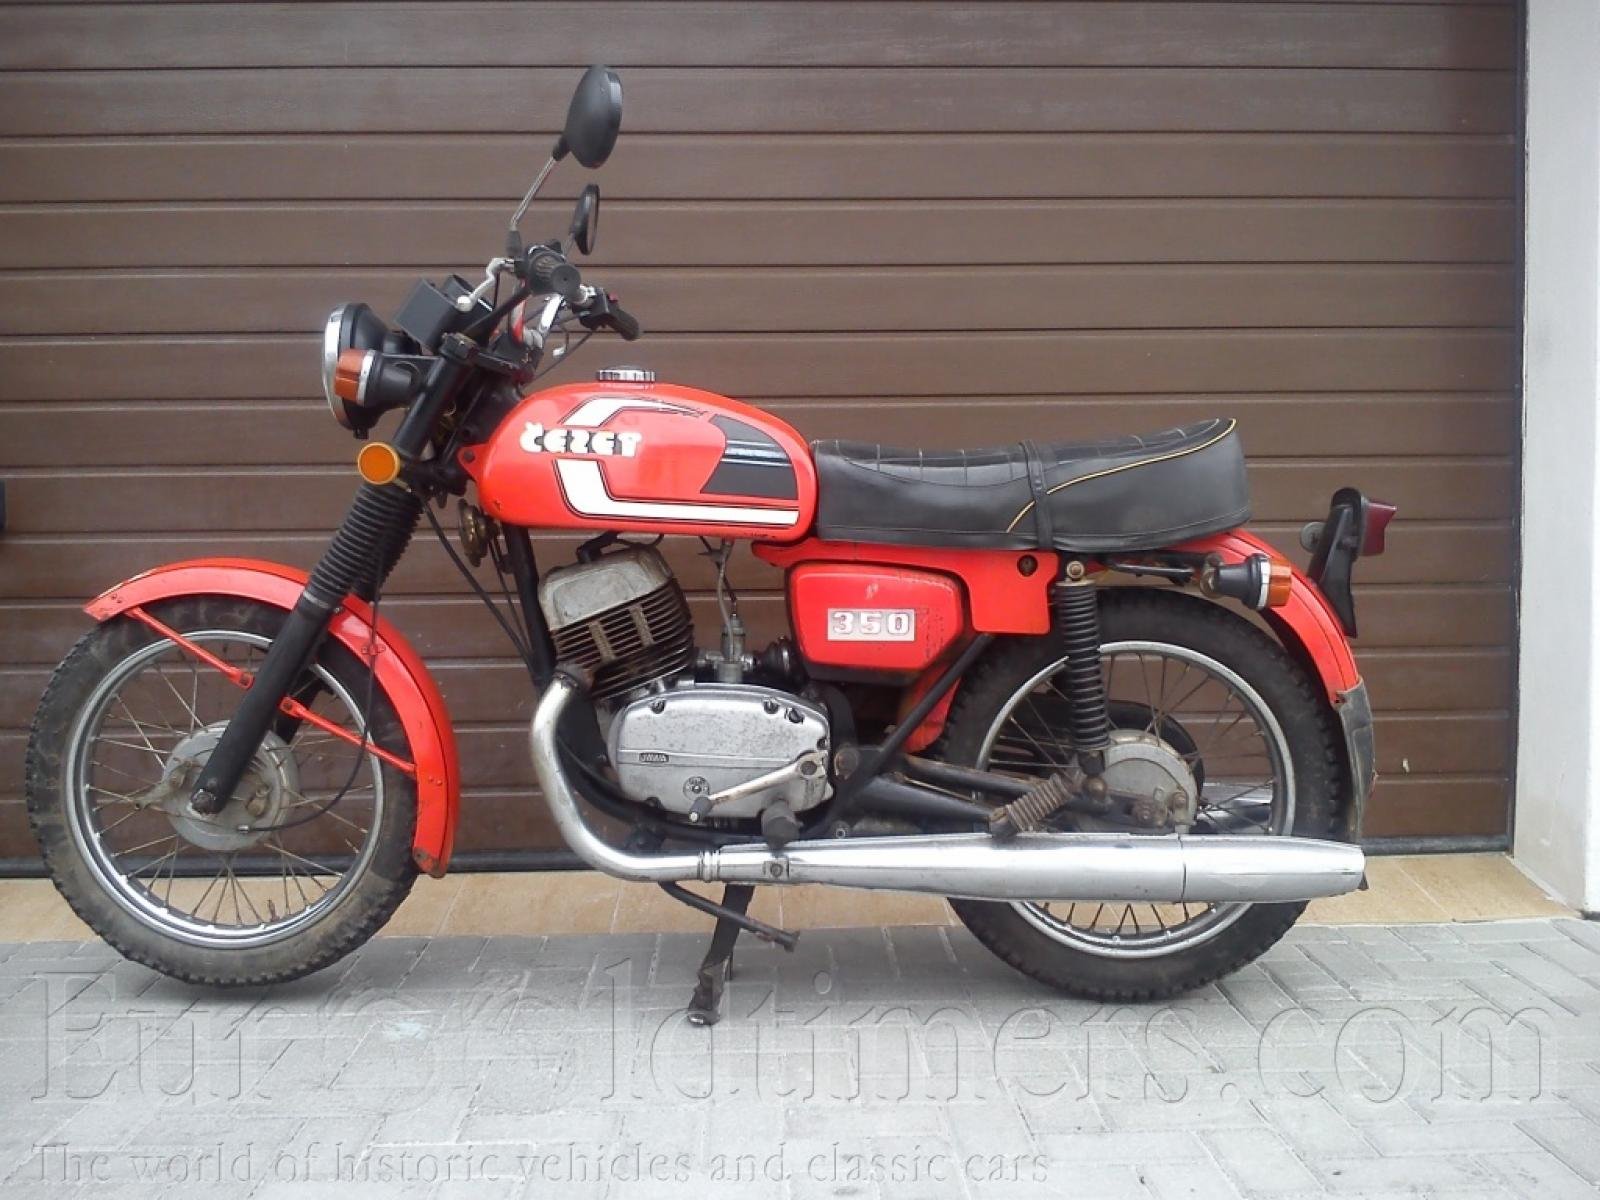 Мотоцикл Cezet 350 472.5